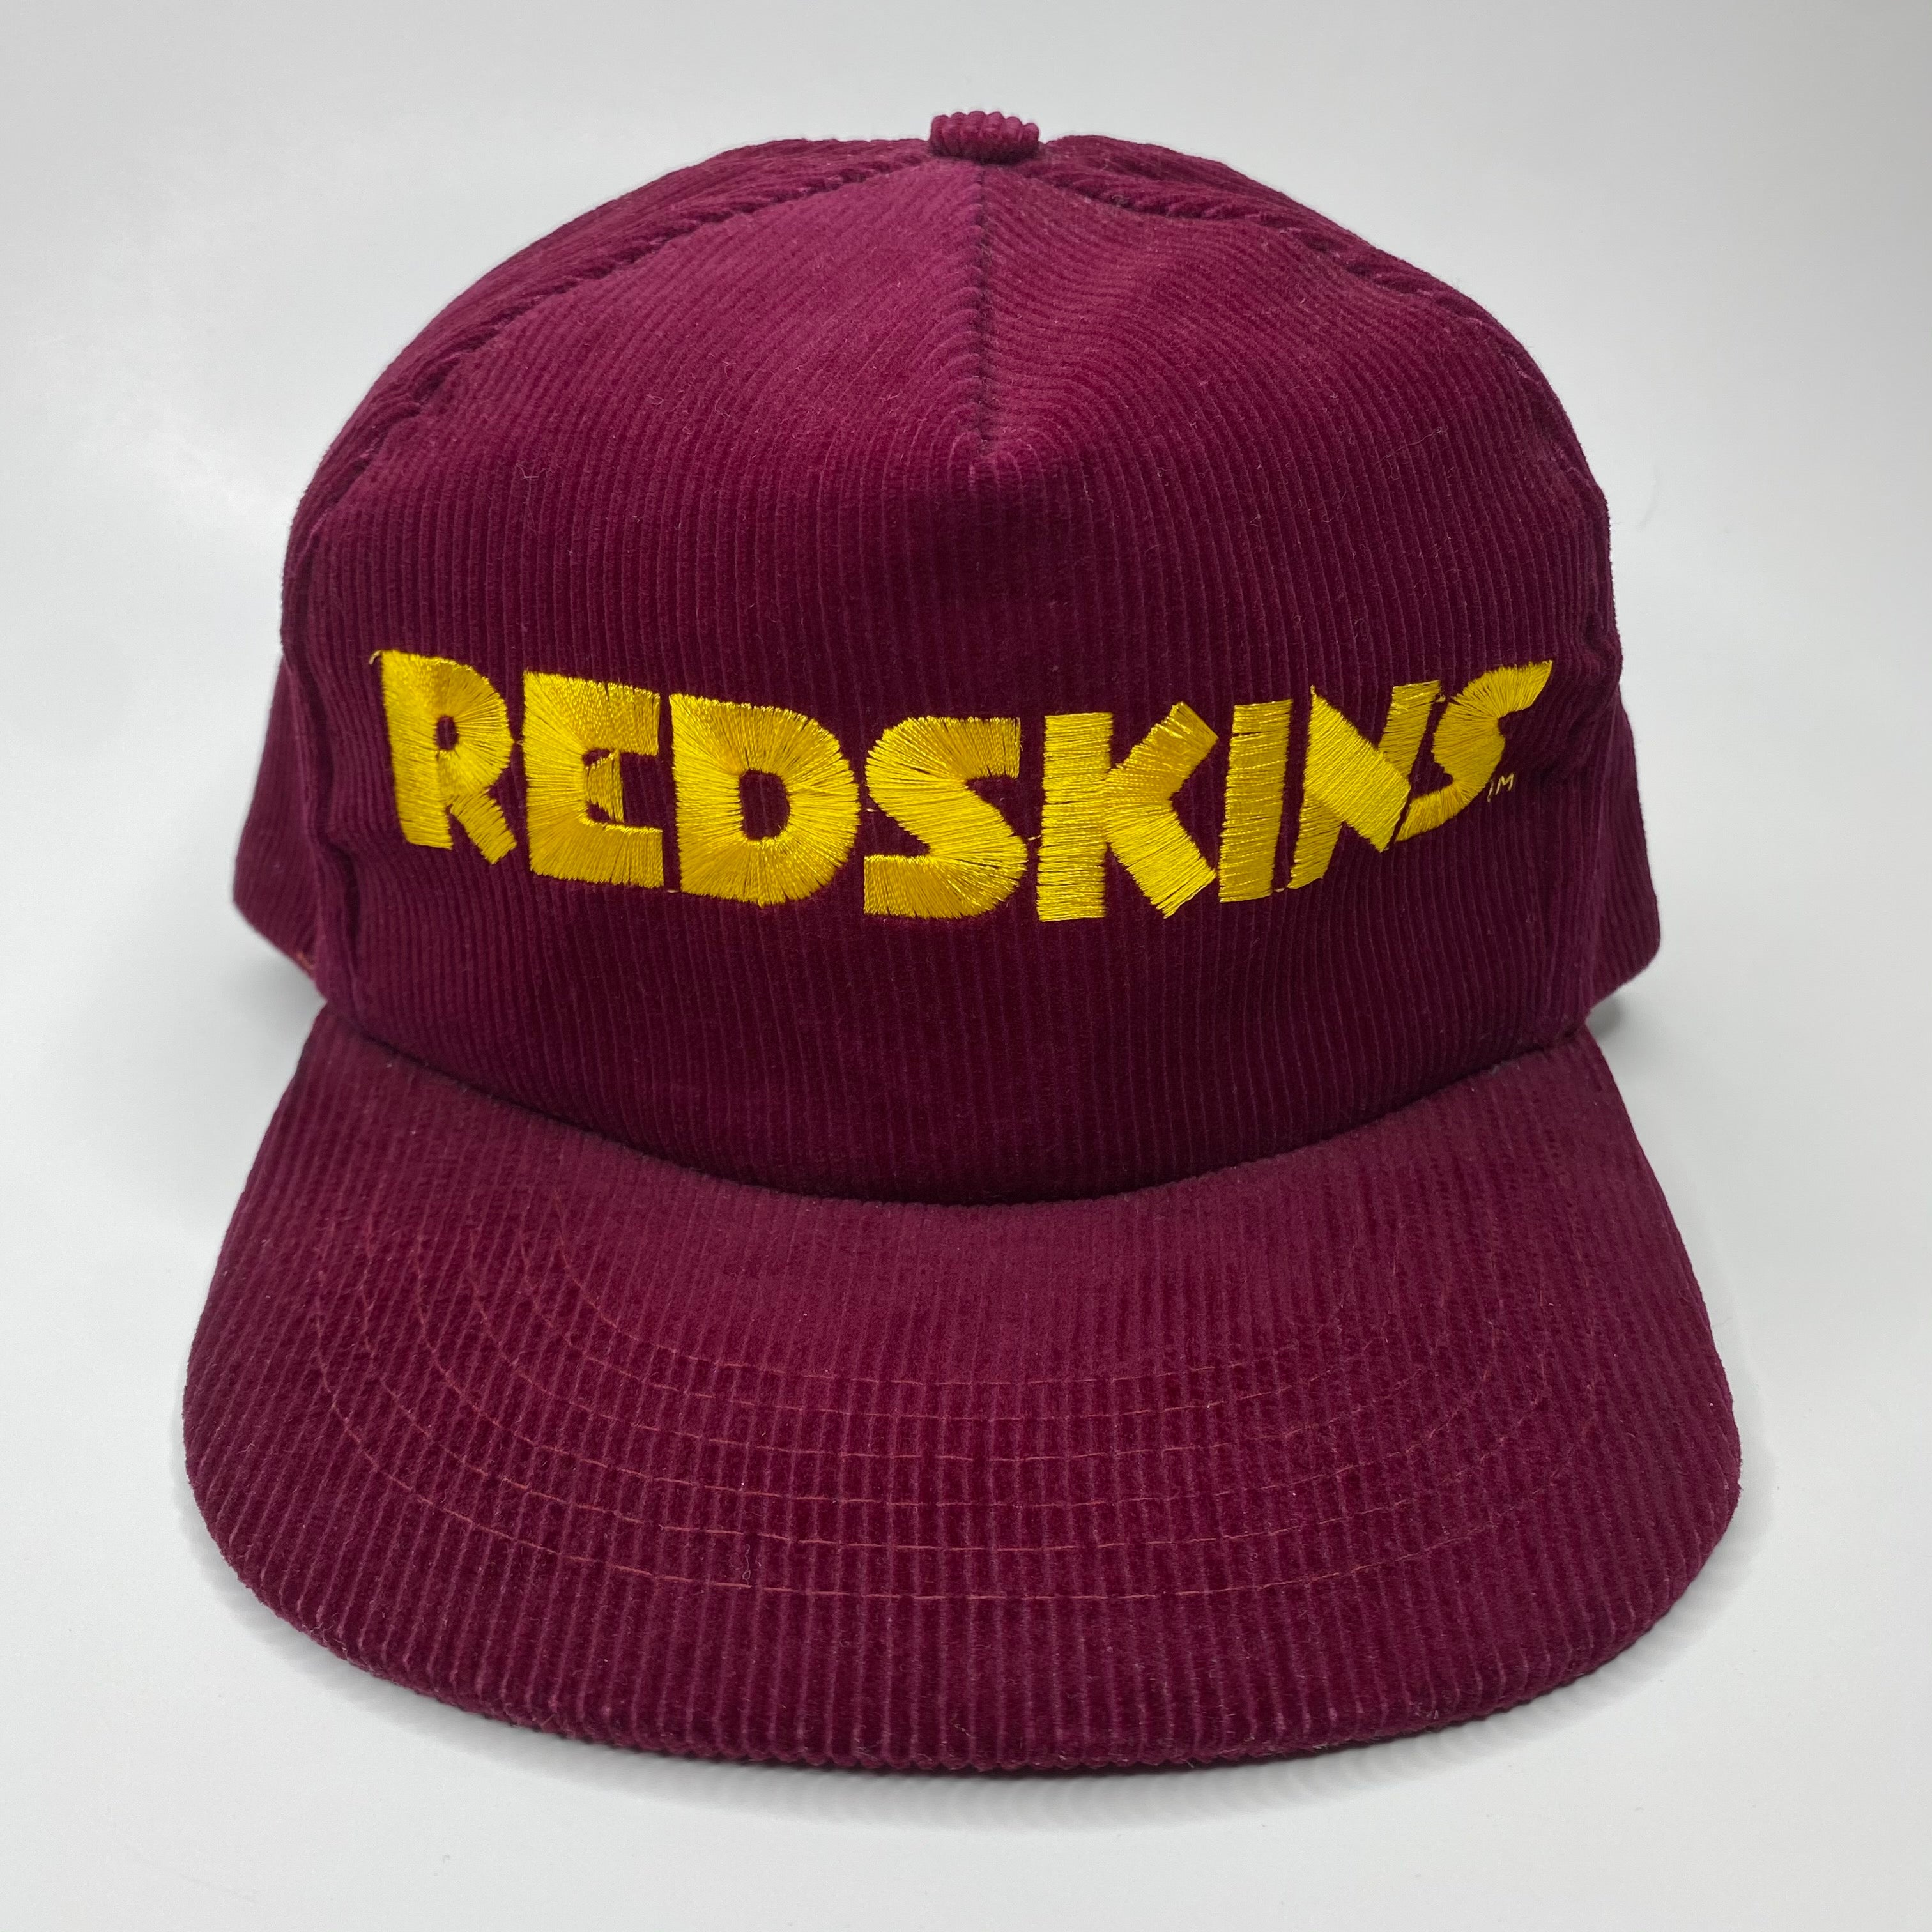 redskins hats for sale